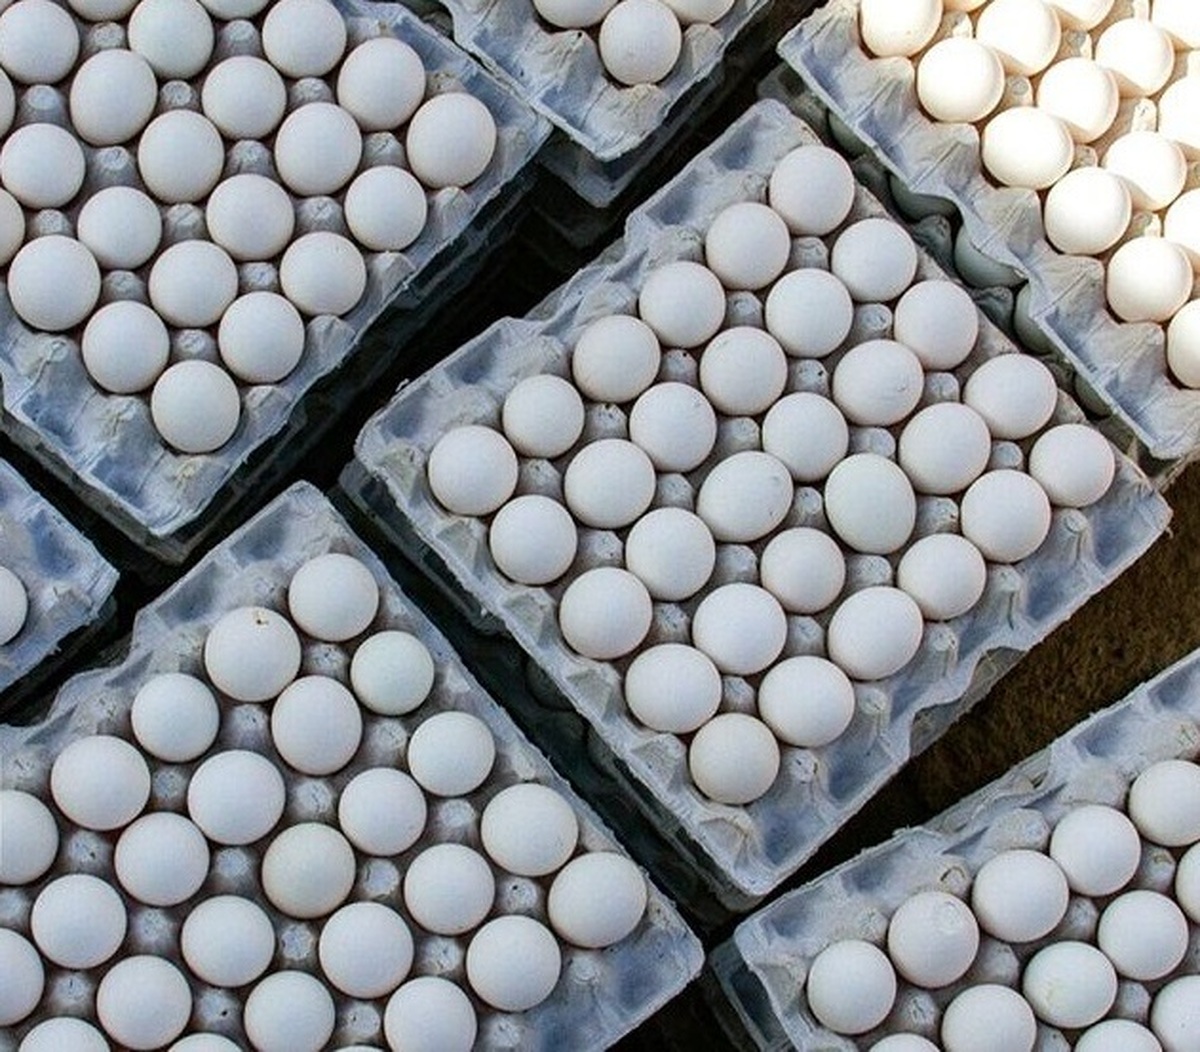 رییس اداره دامپزشکی شهرستان کرج از صادرات ۲ هزار و ۵۰۰ تن تخم مرغ خوراکی به کشورهای همسایه خبر داد .